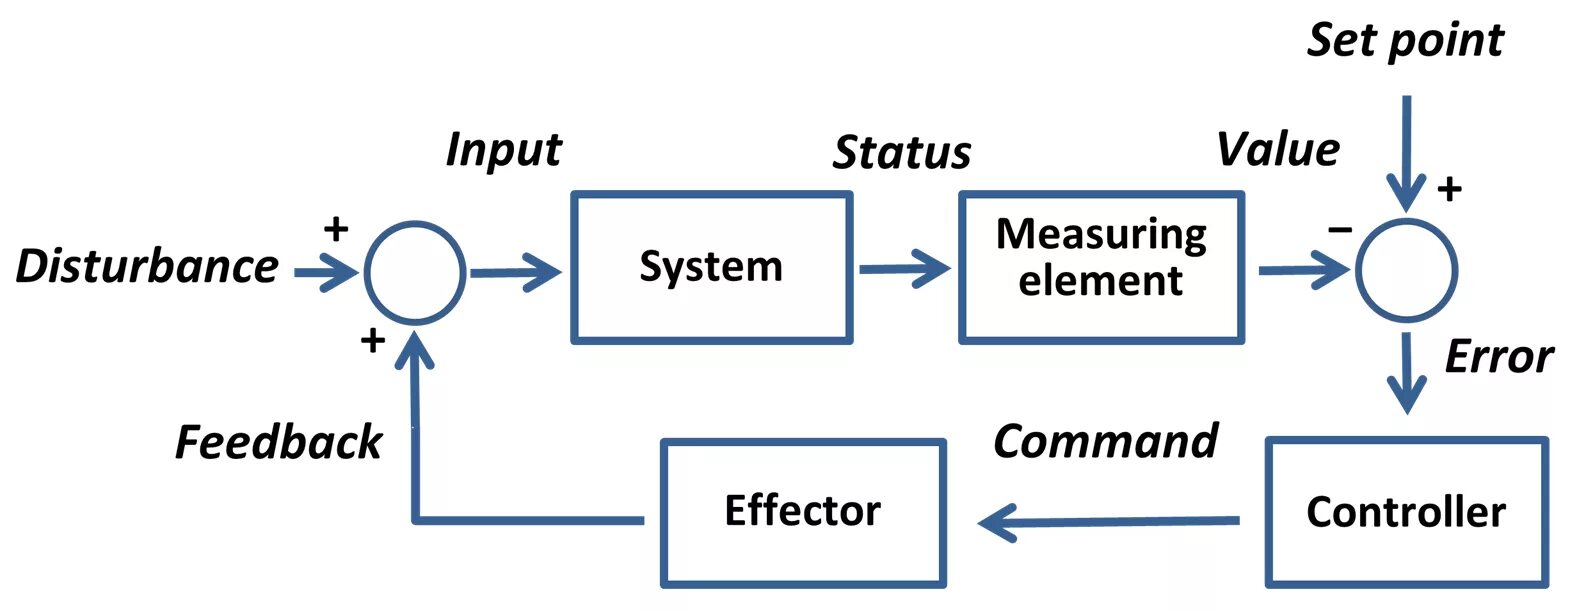 Systems википедия. Feedback Control. Feedback Control System примеры. Automatic Control feedback. Control_point на схеме.